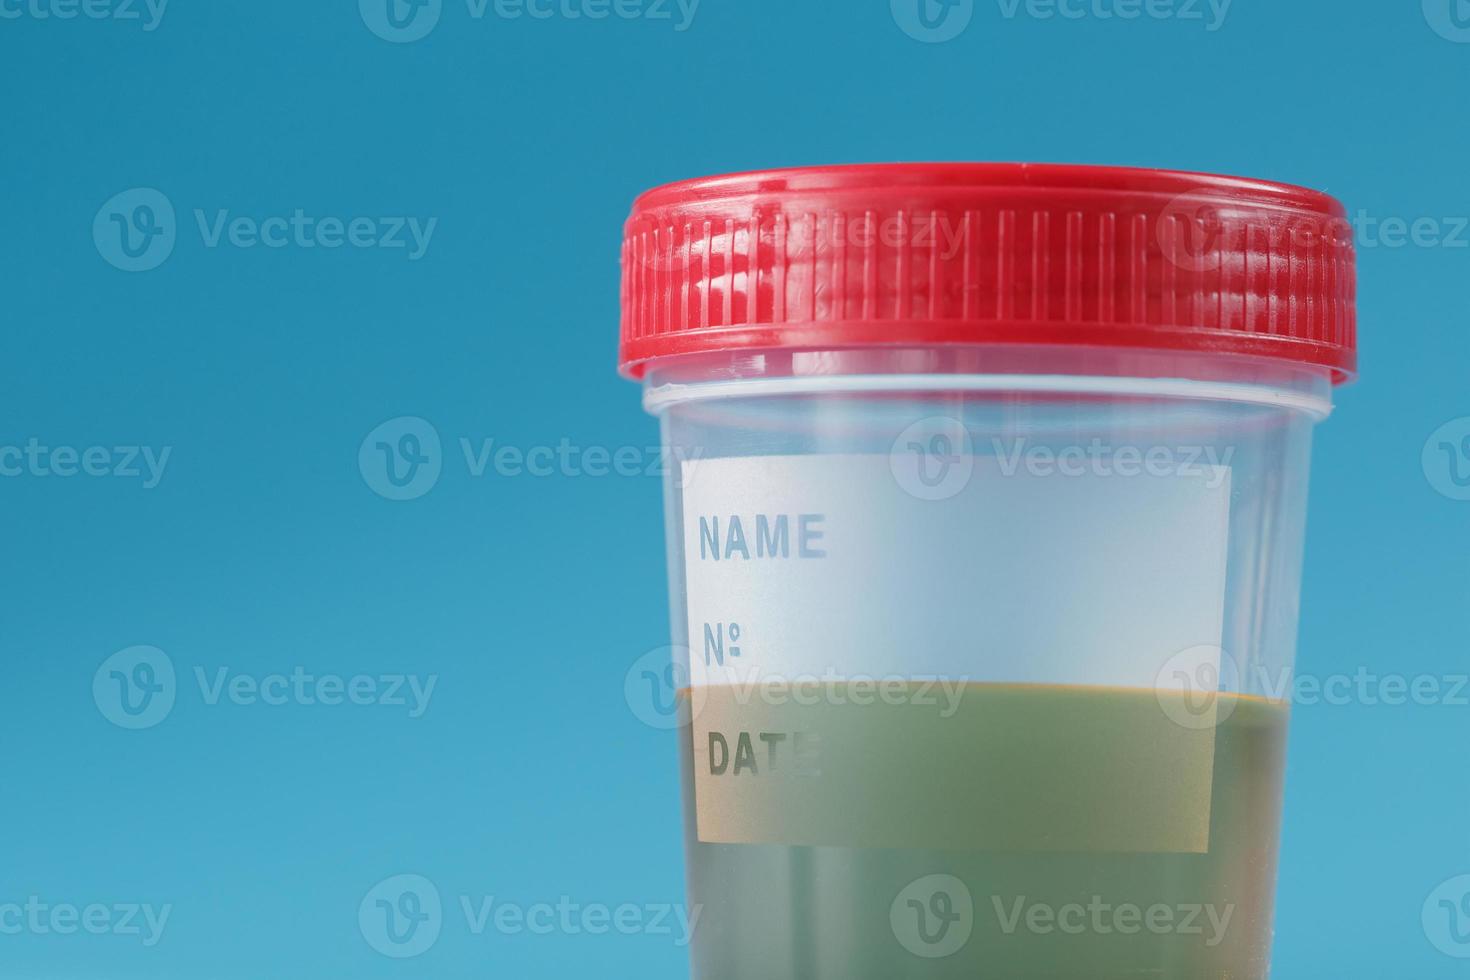 urina em um recipiente de teste com tampa vermelha sobre fundo azul. cuidados de saúde e conceito médico. foto